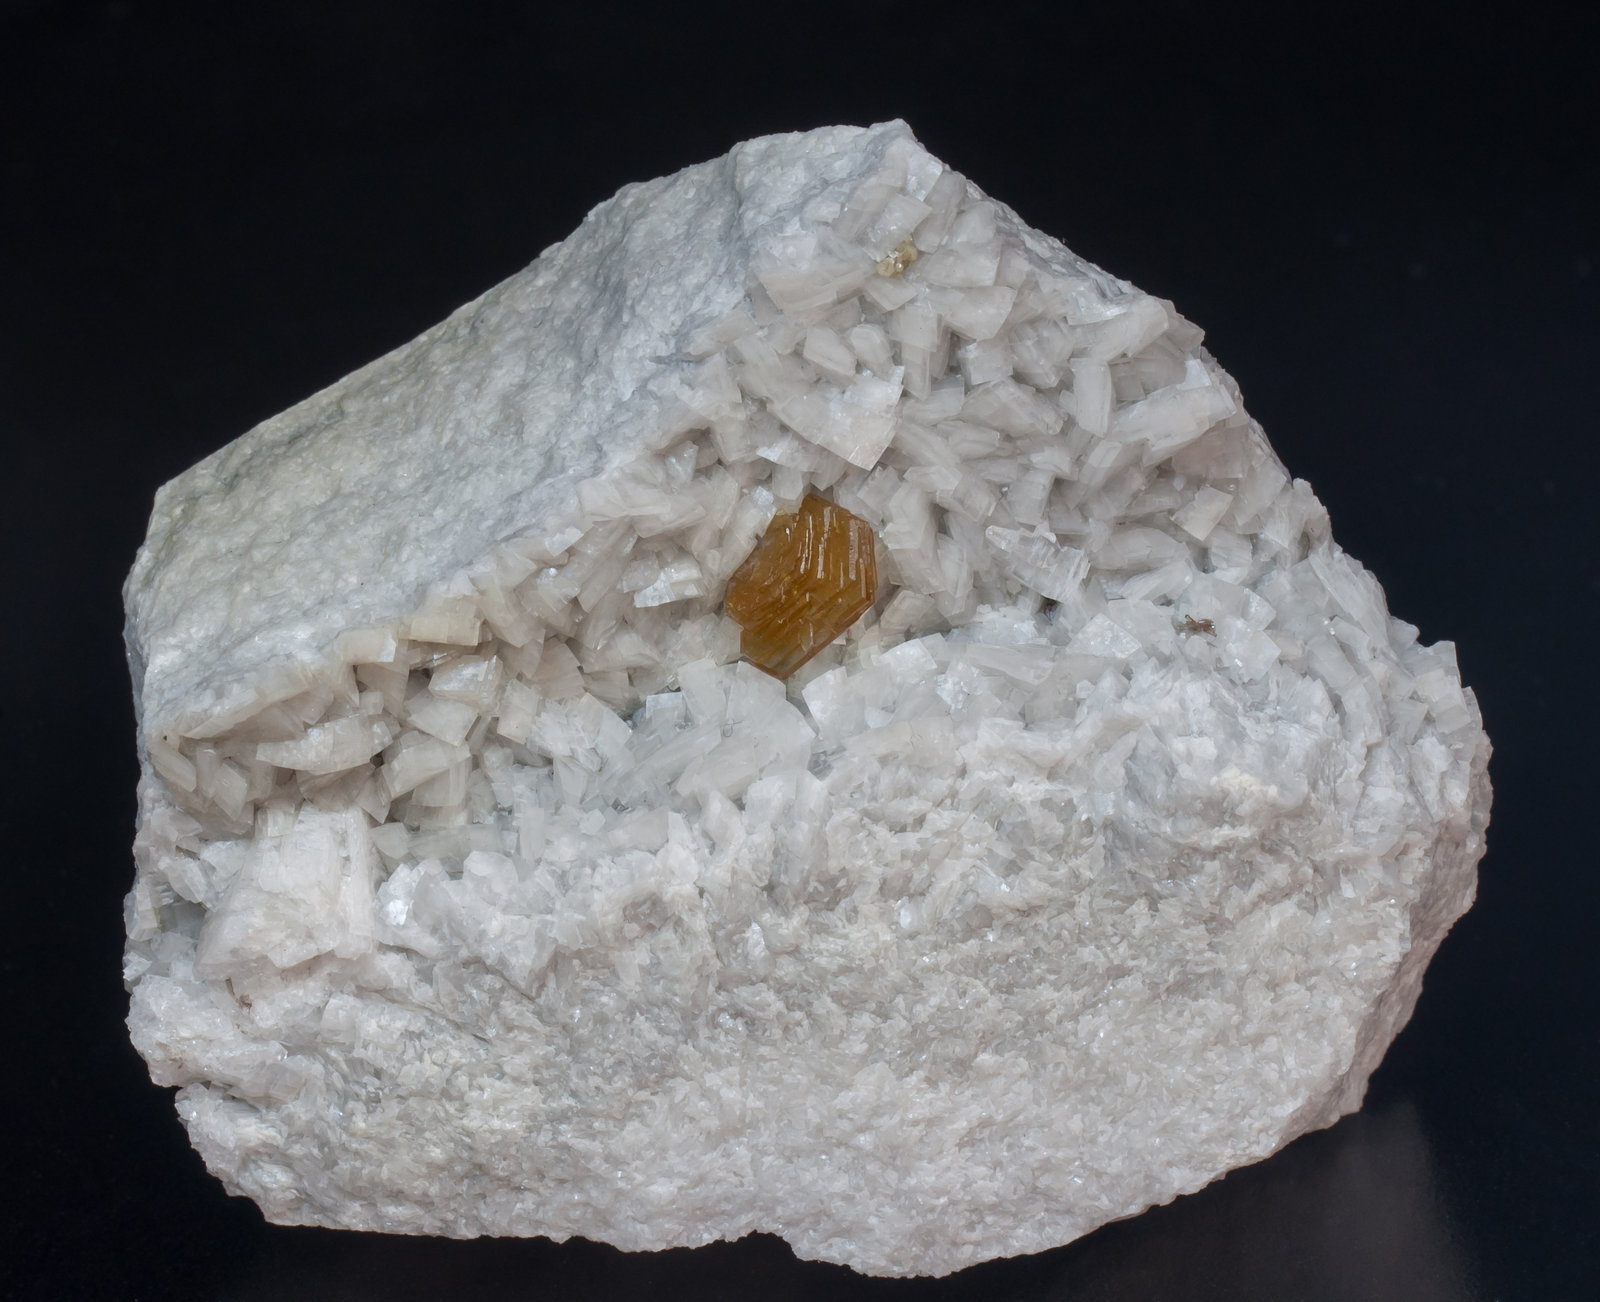 specimens/s_imagesAJ4/Hydroxylbastnasite-MH88AJ4f.jpg